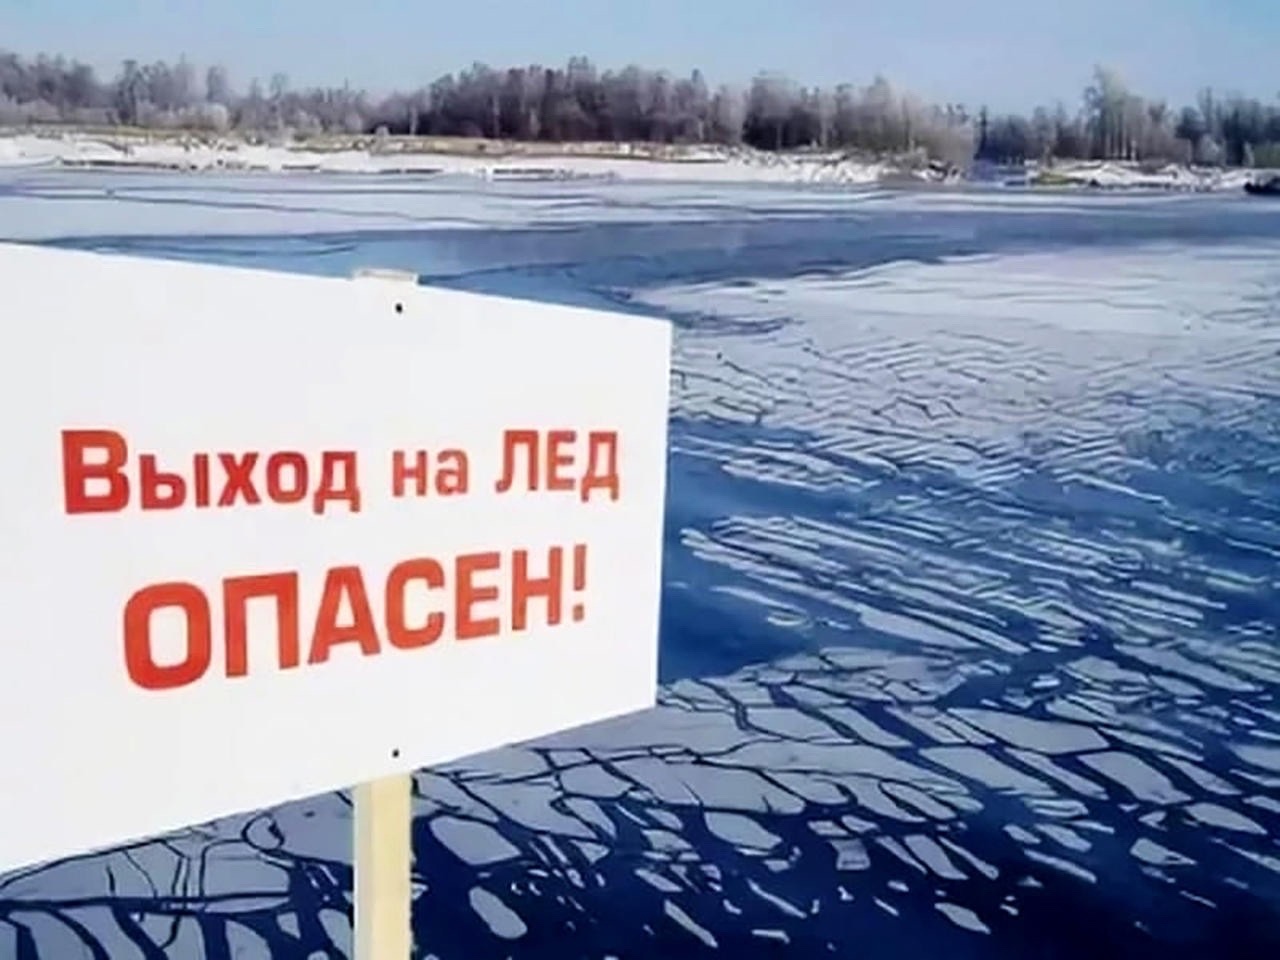 Соблюдайте правила безопасности при выходе на лёд.